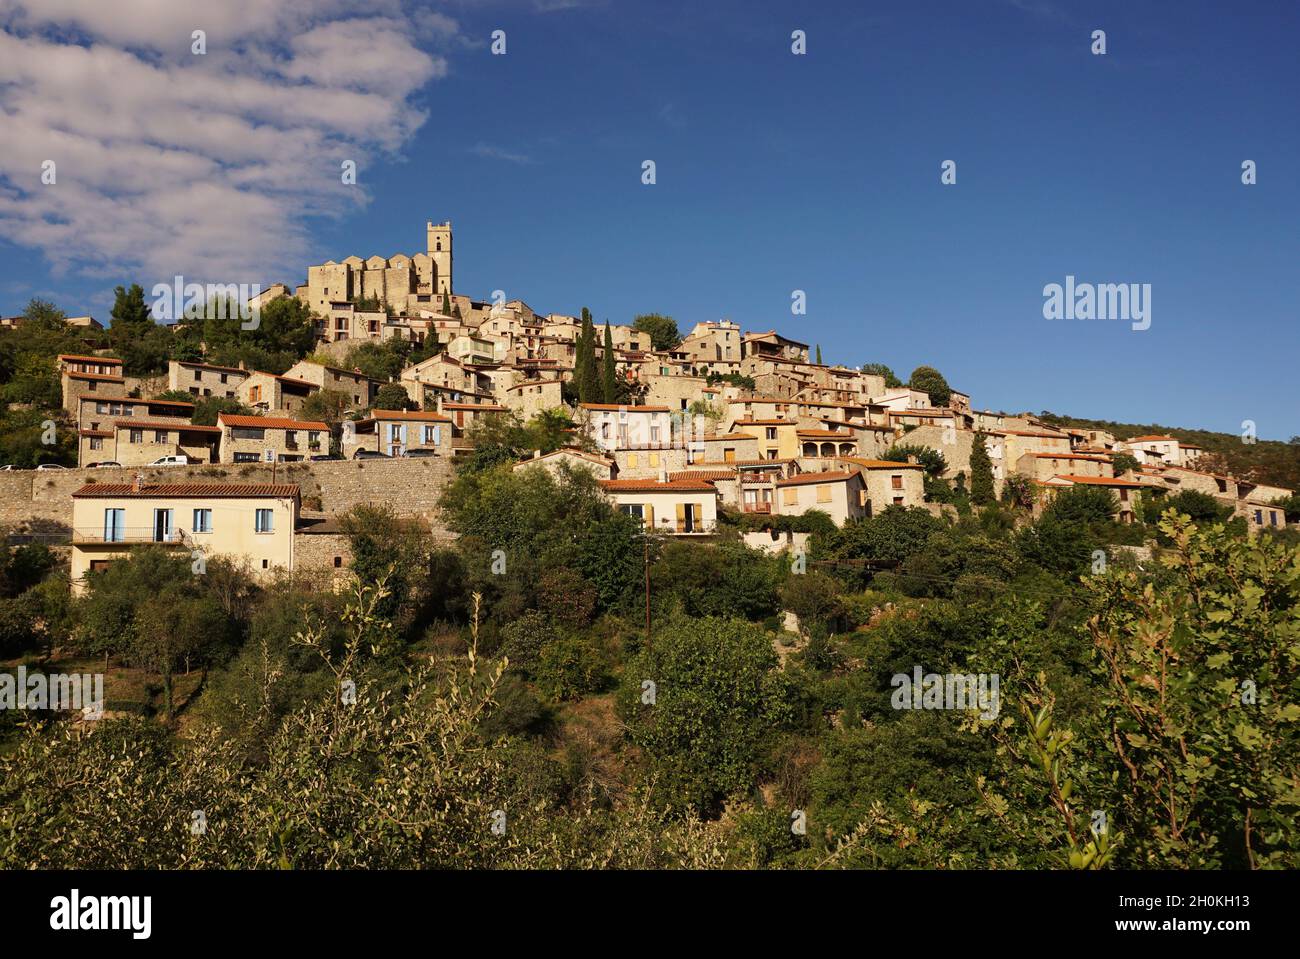 Eus, a village in the association 'Les Plus Beaux Villages de France', located in Pyrénées-Orientales department, southern France Stock Photo